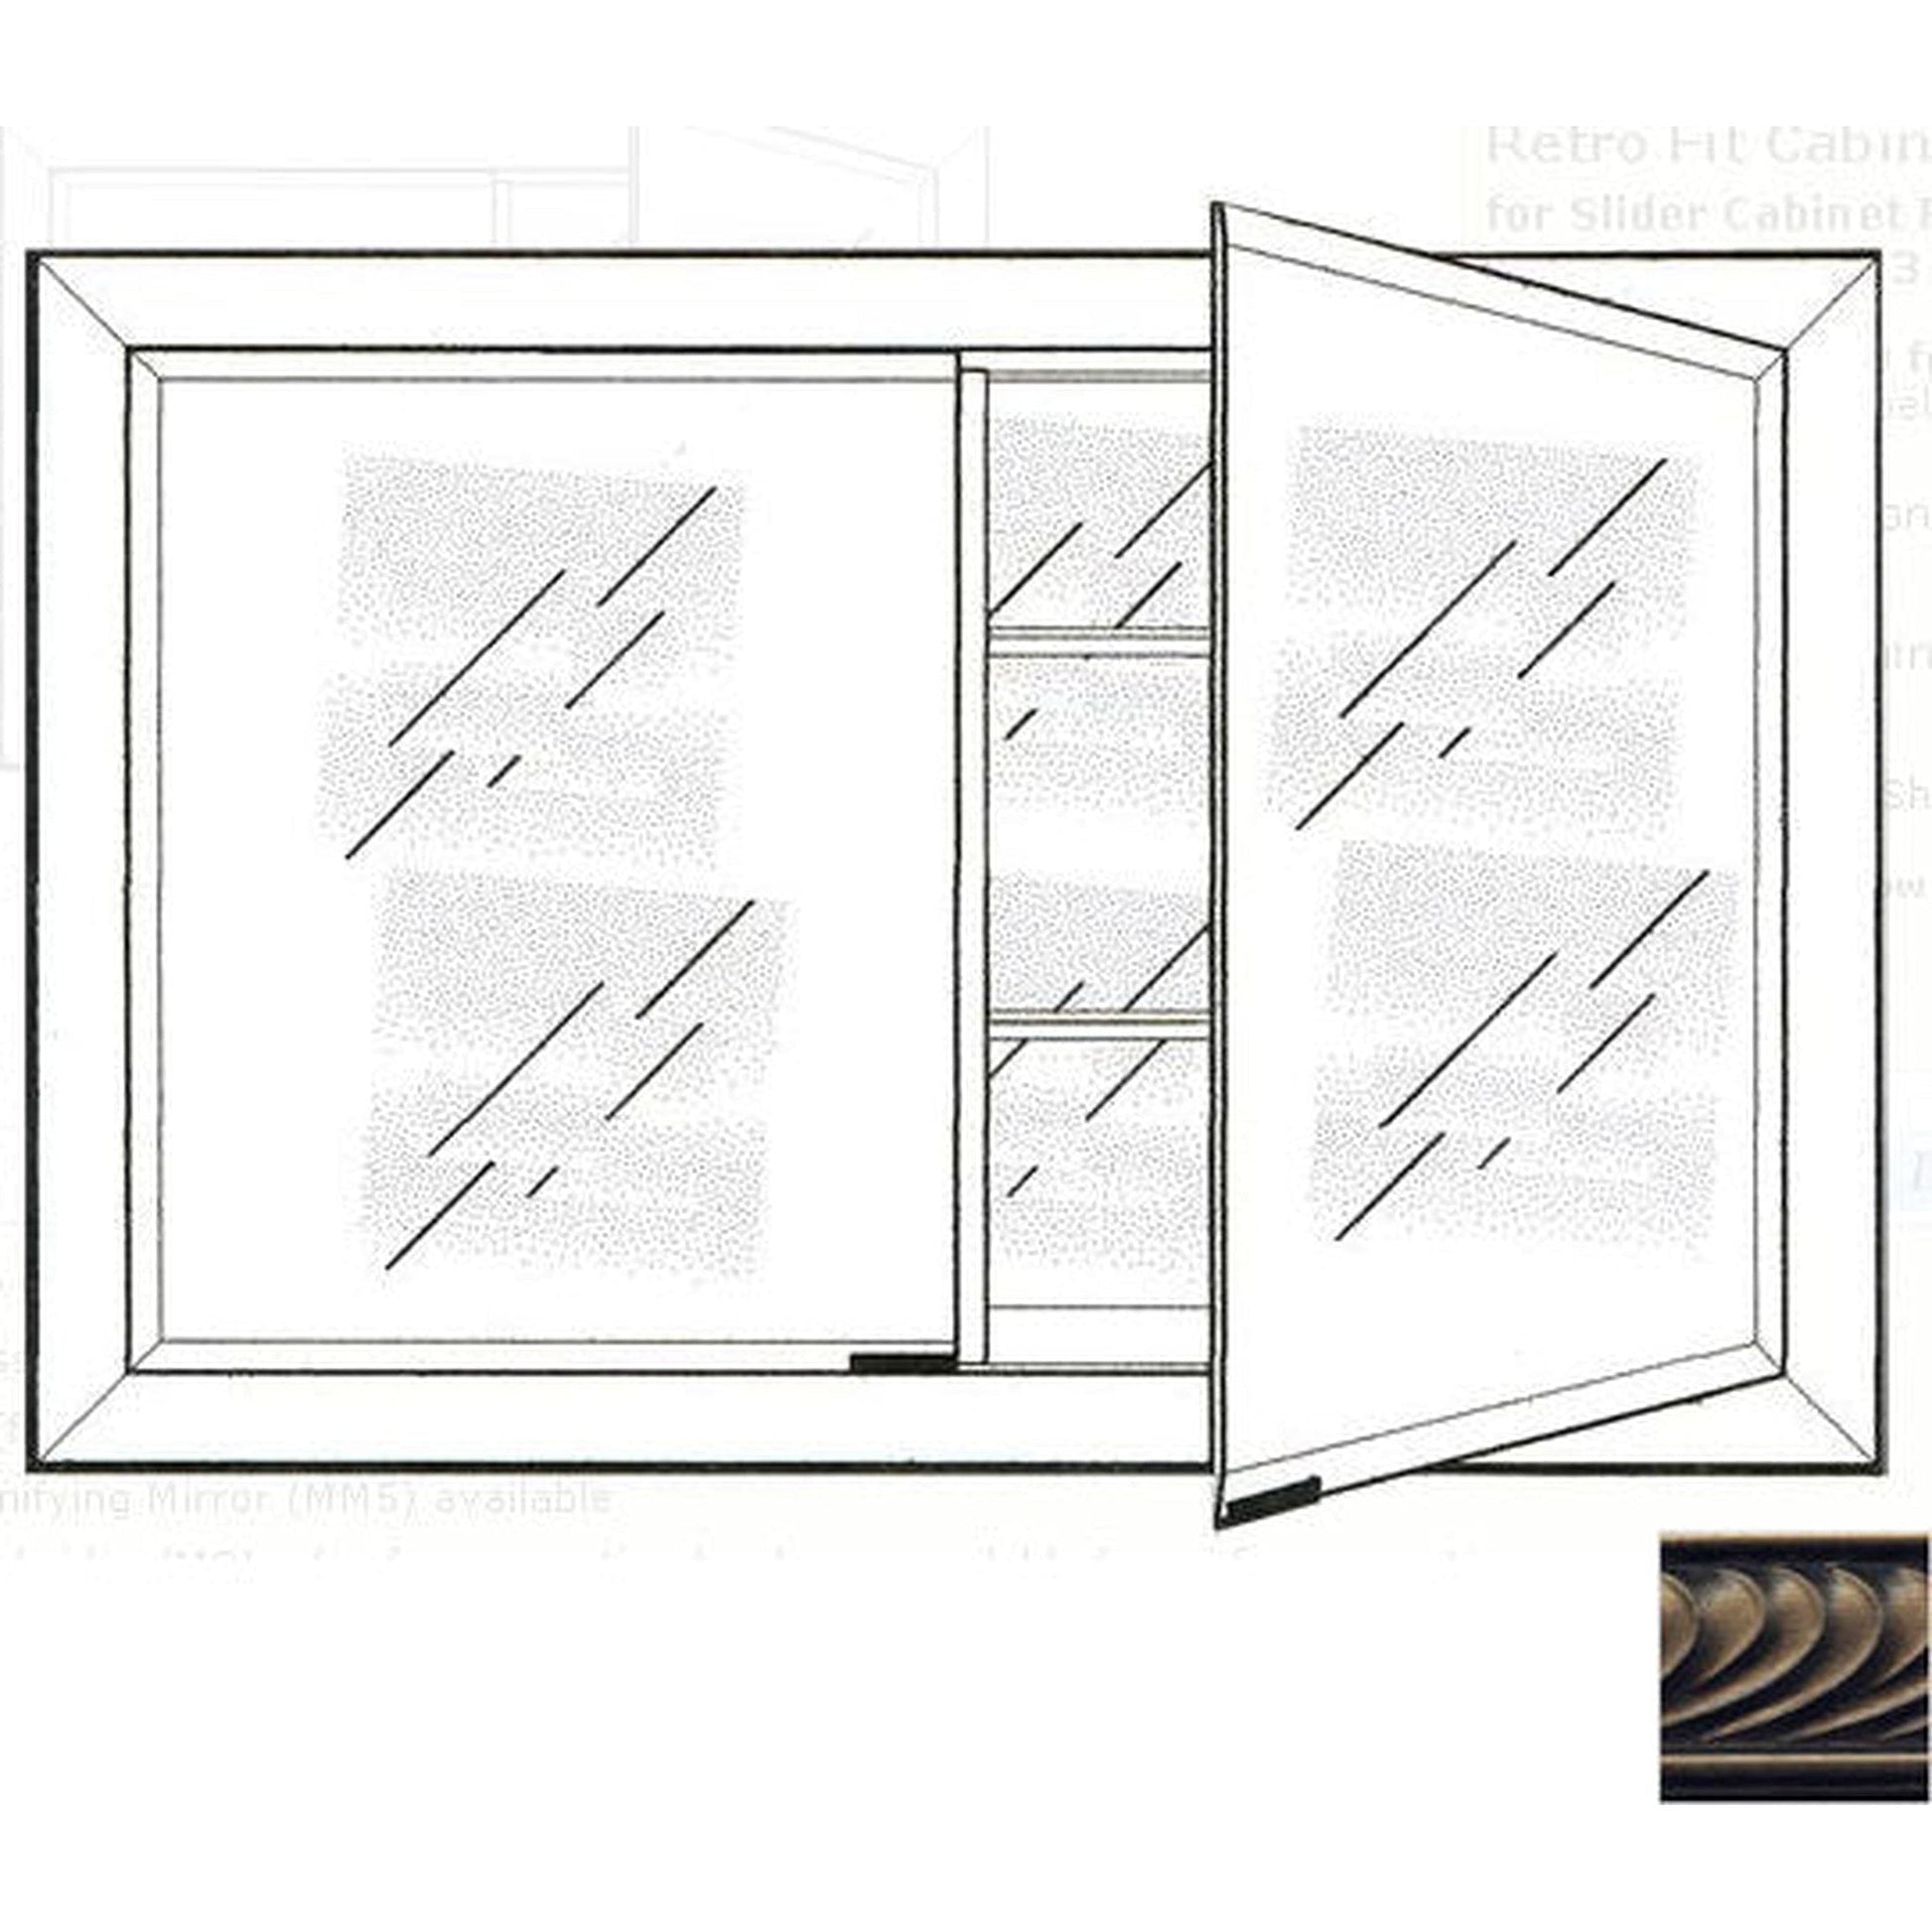 Afina Signature 27" x 21" Versailles Antique Pewter Recessed Retro-Fit Double Door Medicine Cabinet With Beveled Edge Mirror